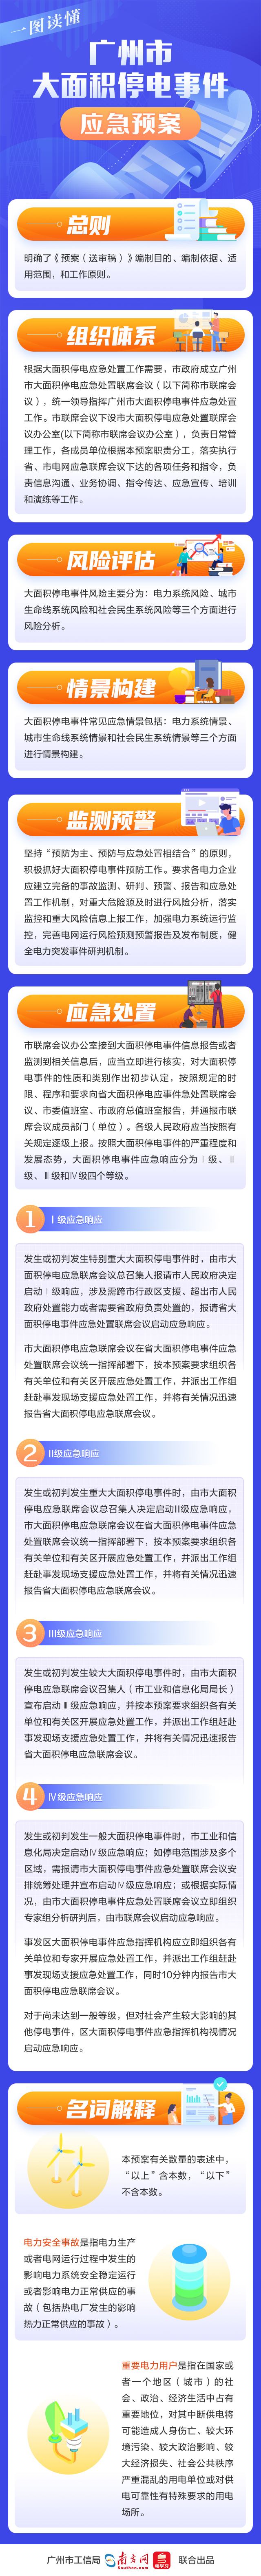 一图读懂《广州市大面积停电事件应急预案》.jpg